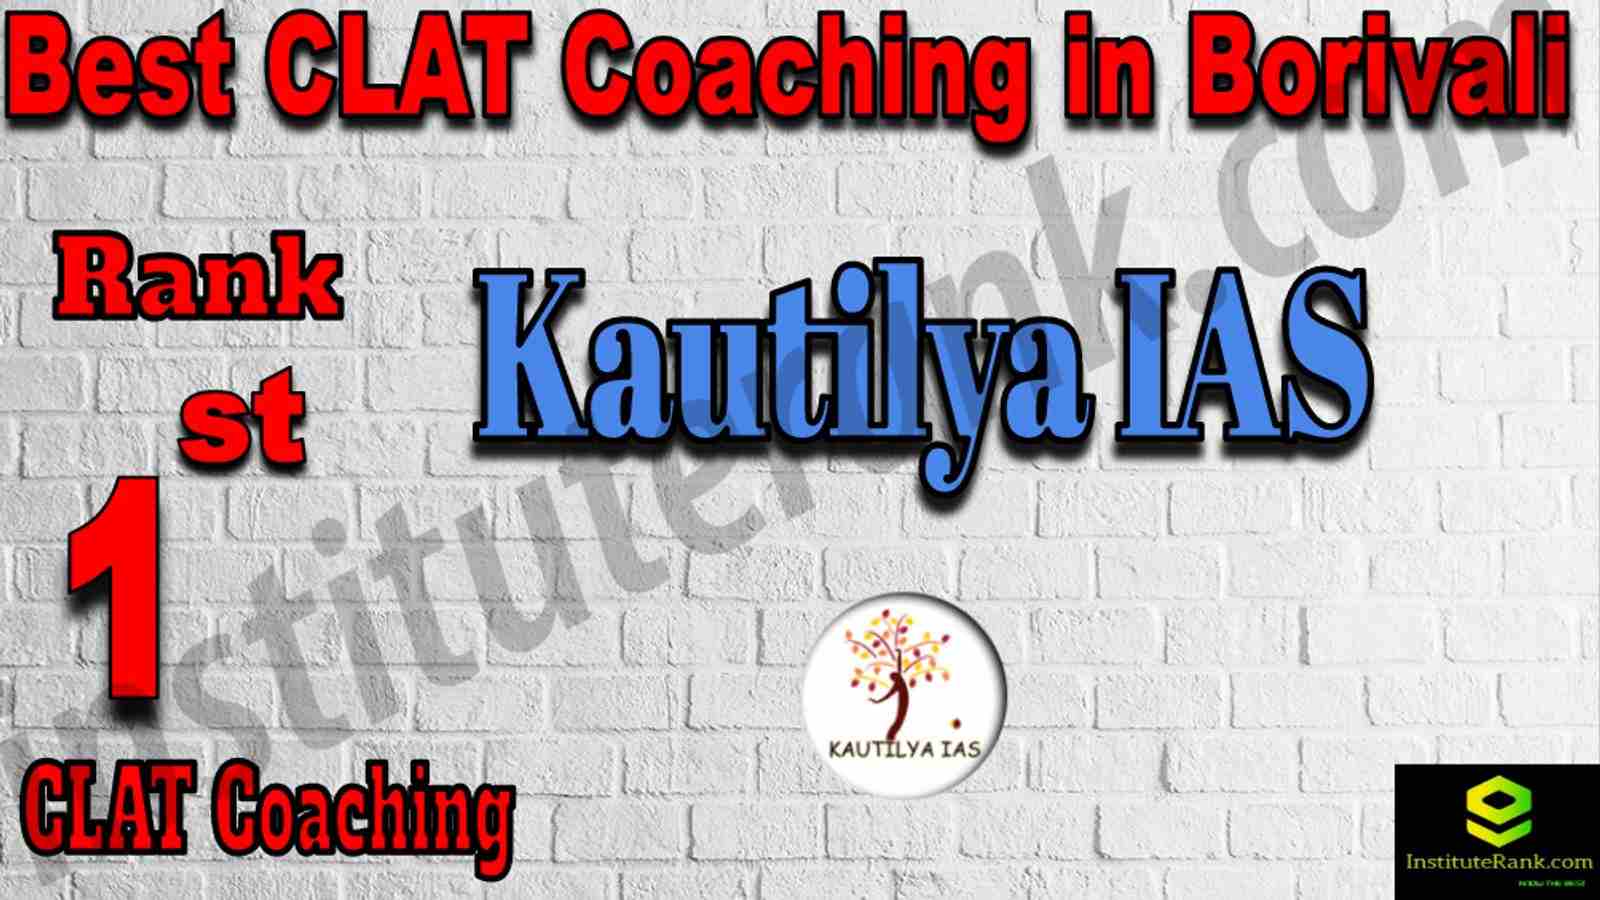 1st Best CLAT Coaching in Borivali